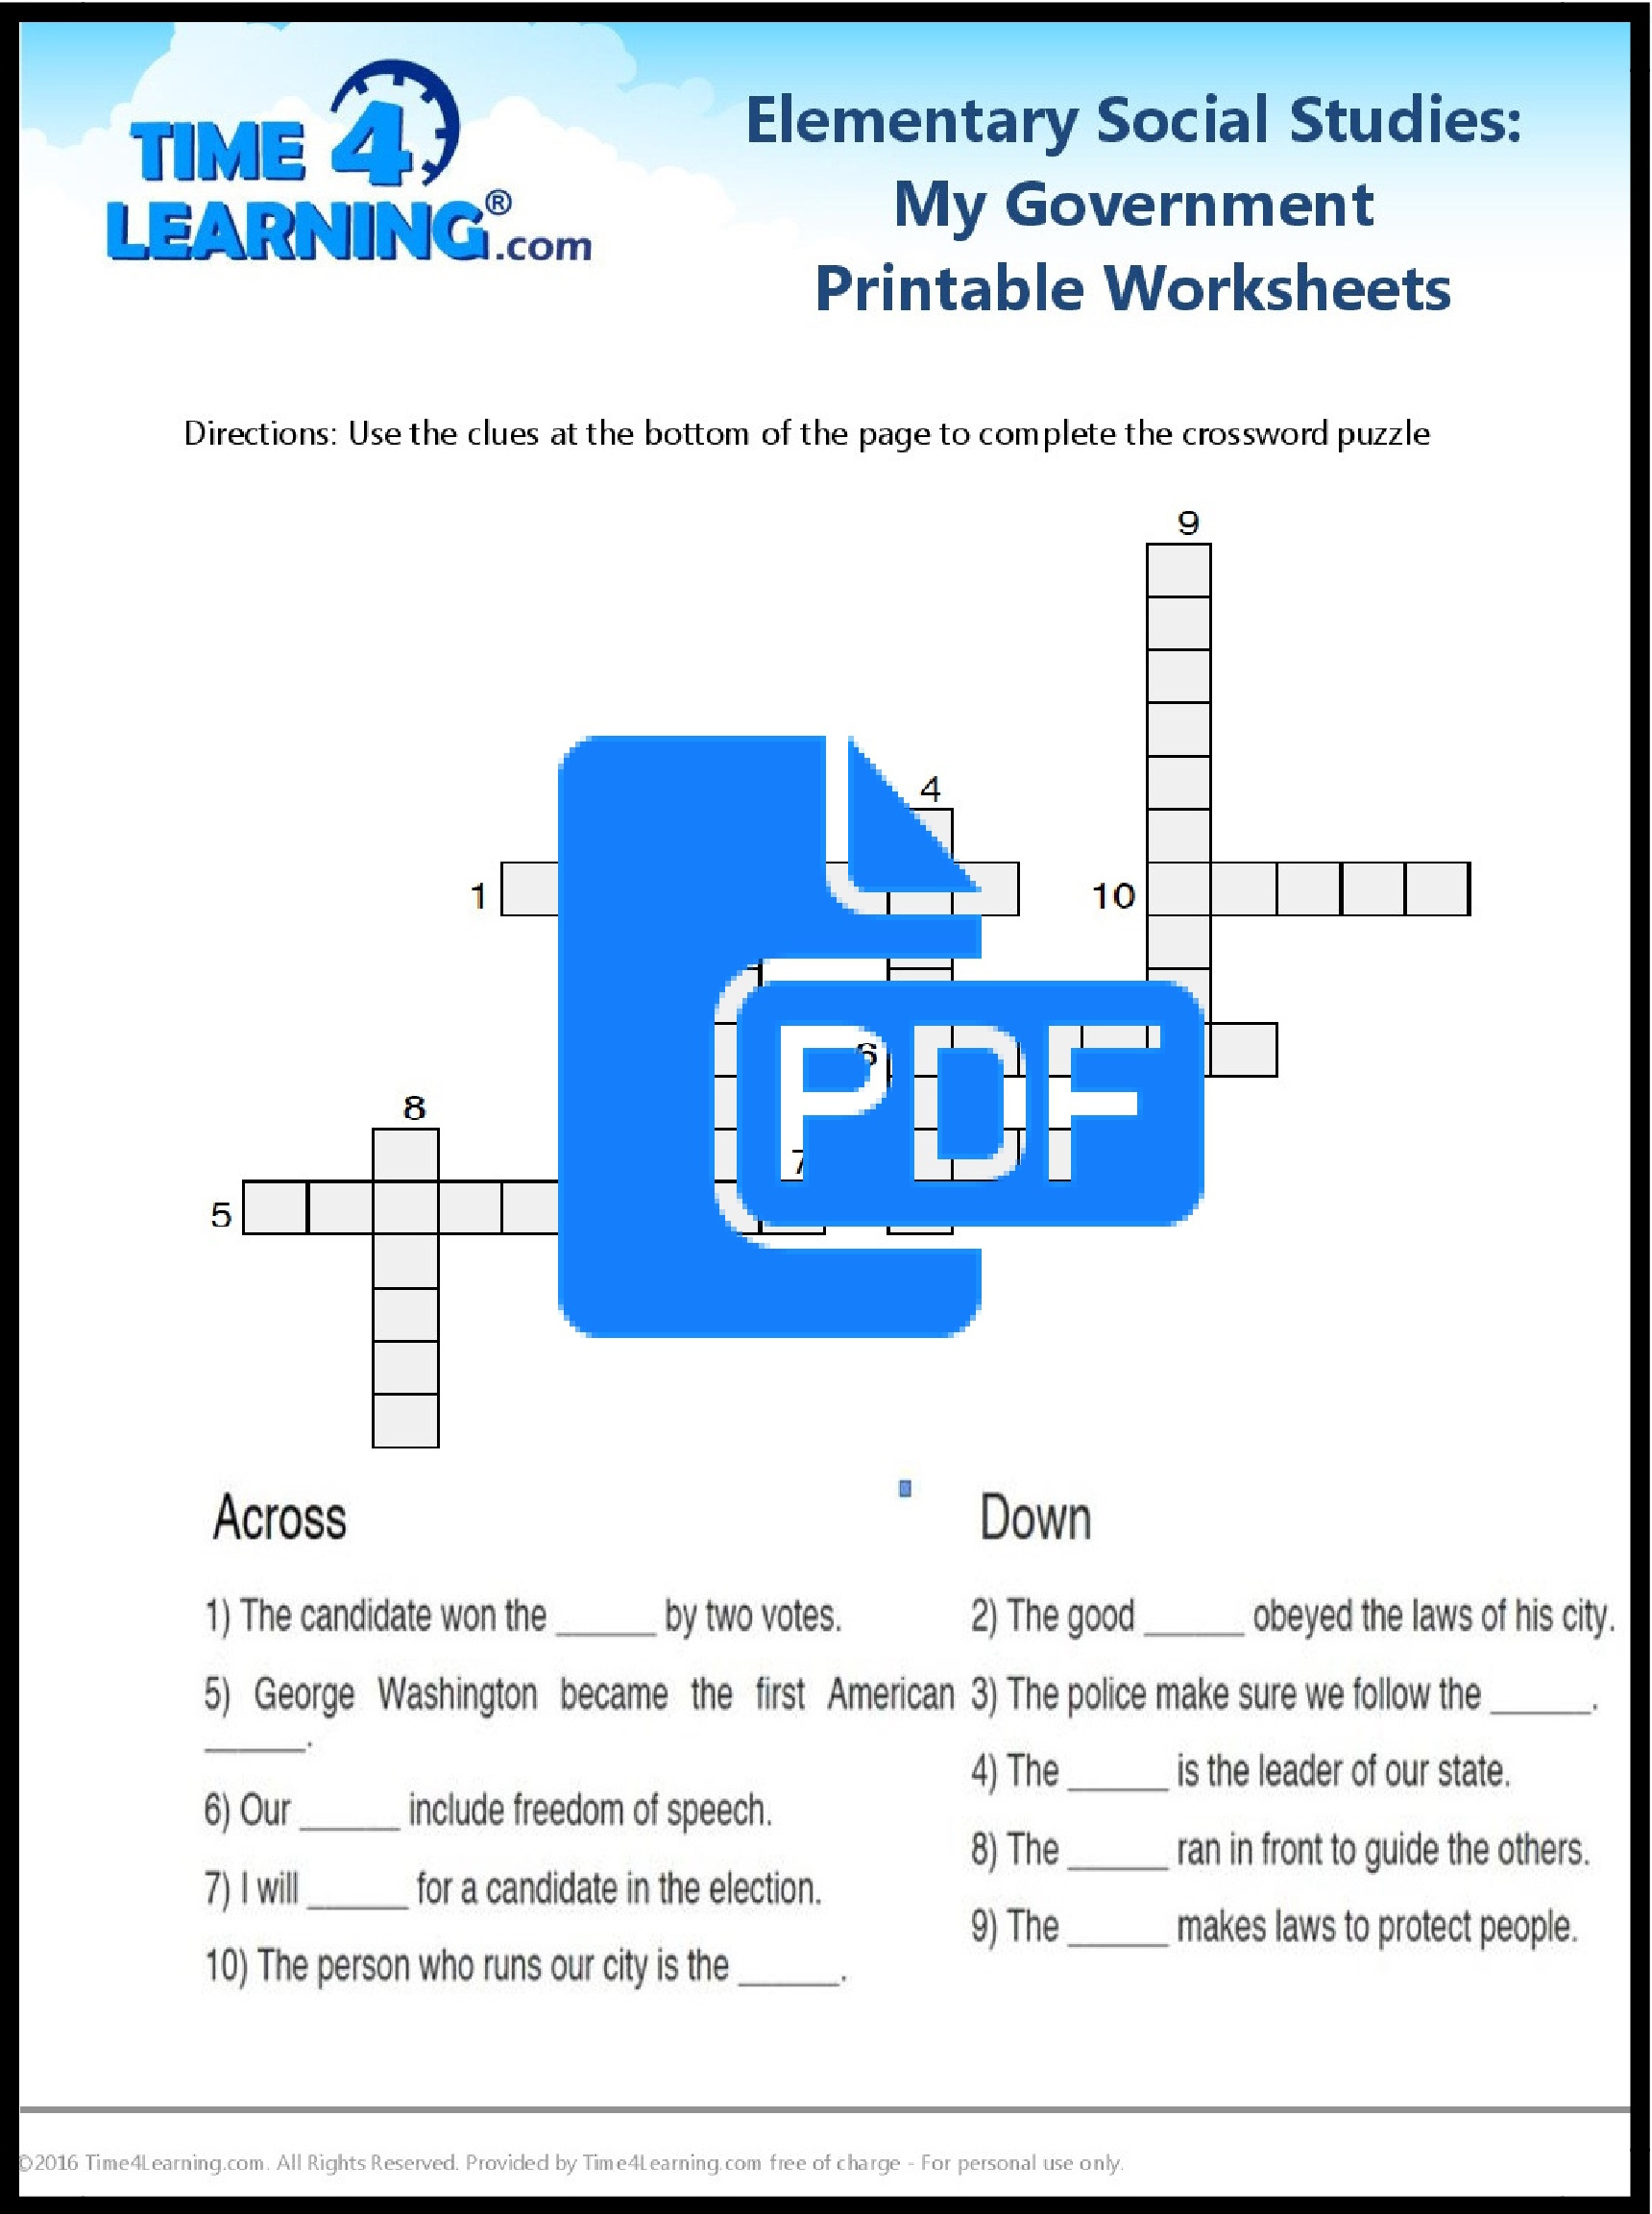 Free Printable: Elementary Social Studies Worksheet | Time4Learning | Printable Social Studies Worksheets